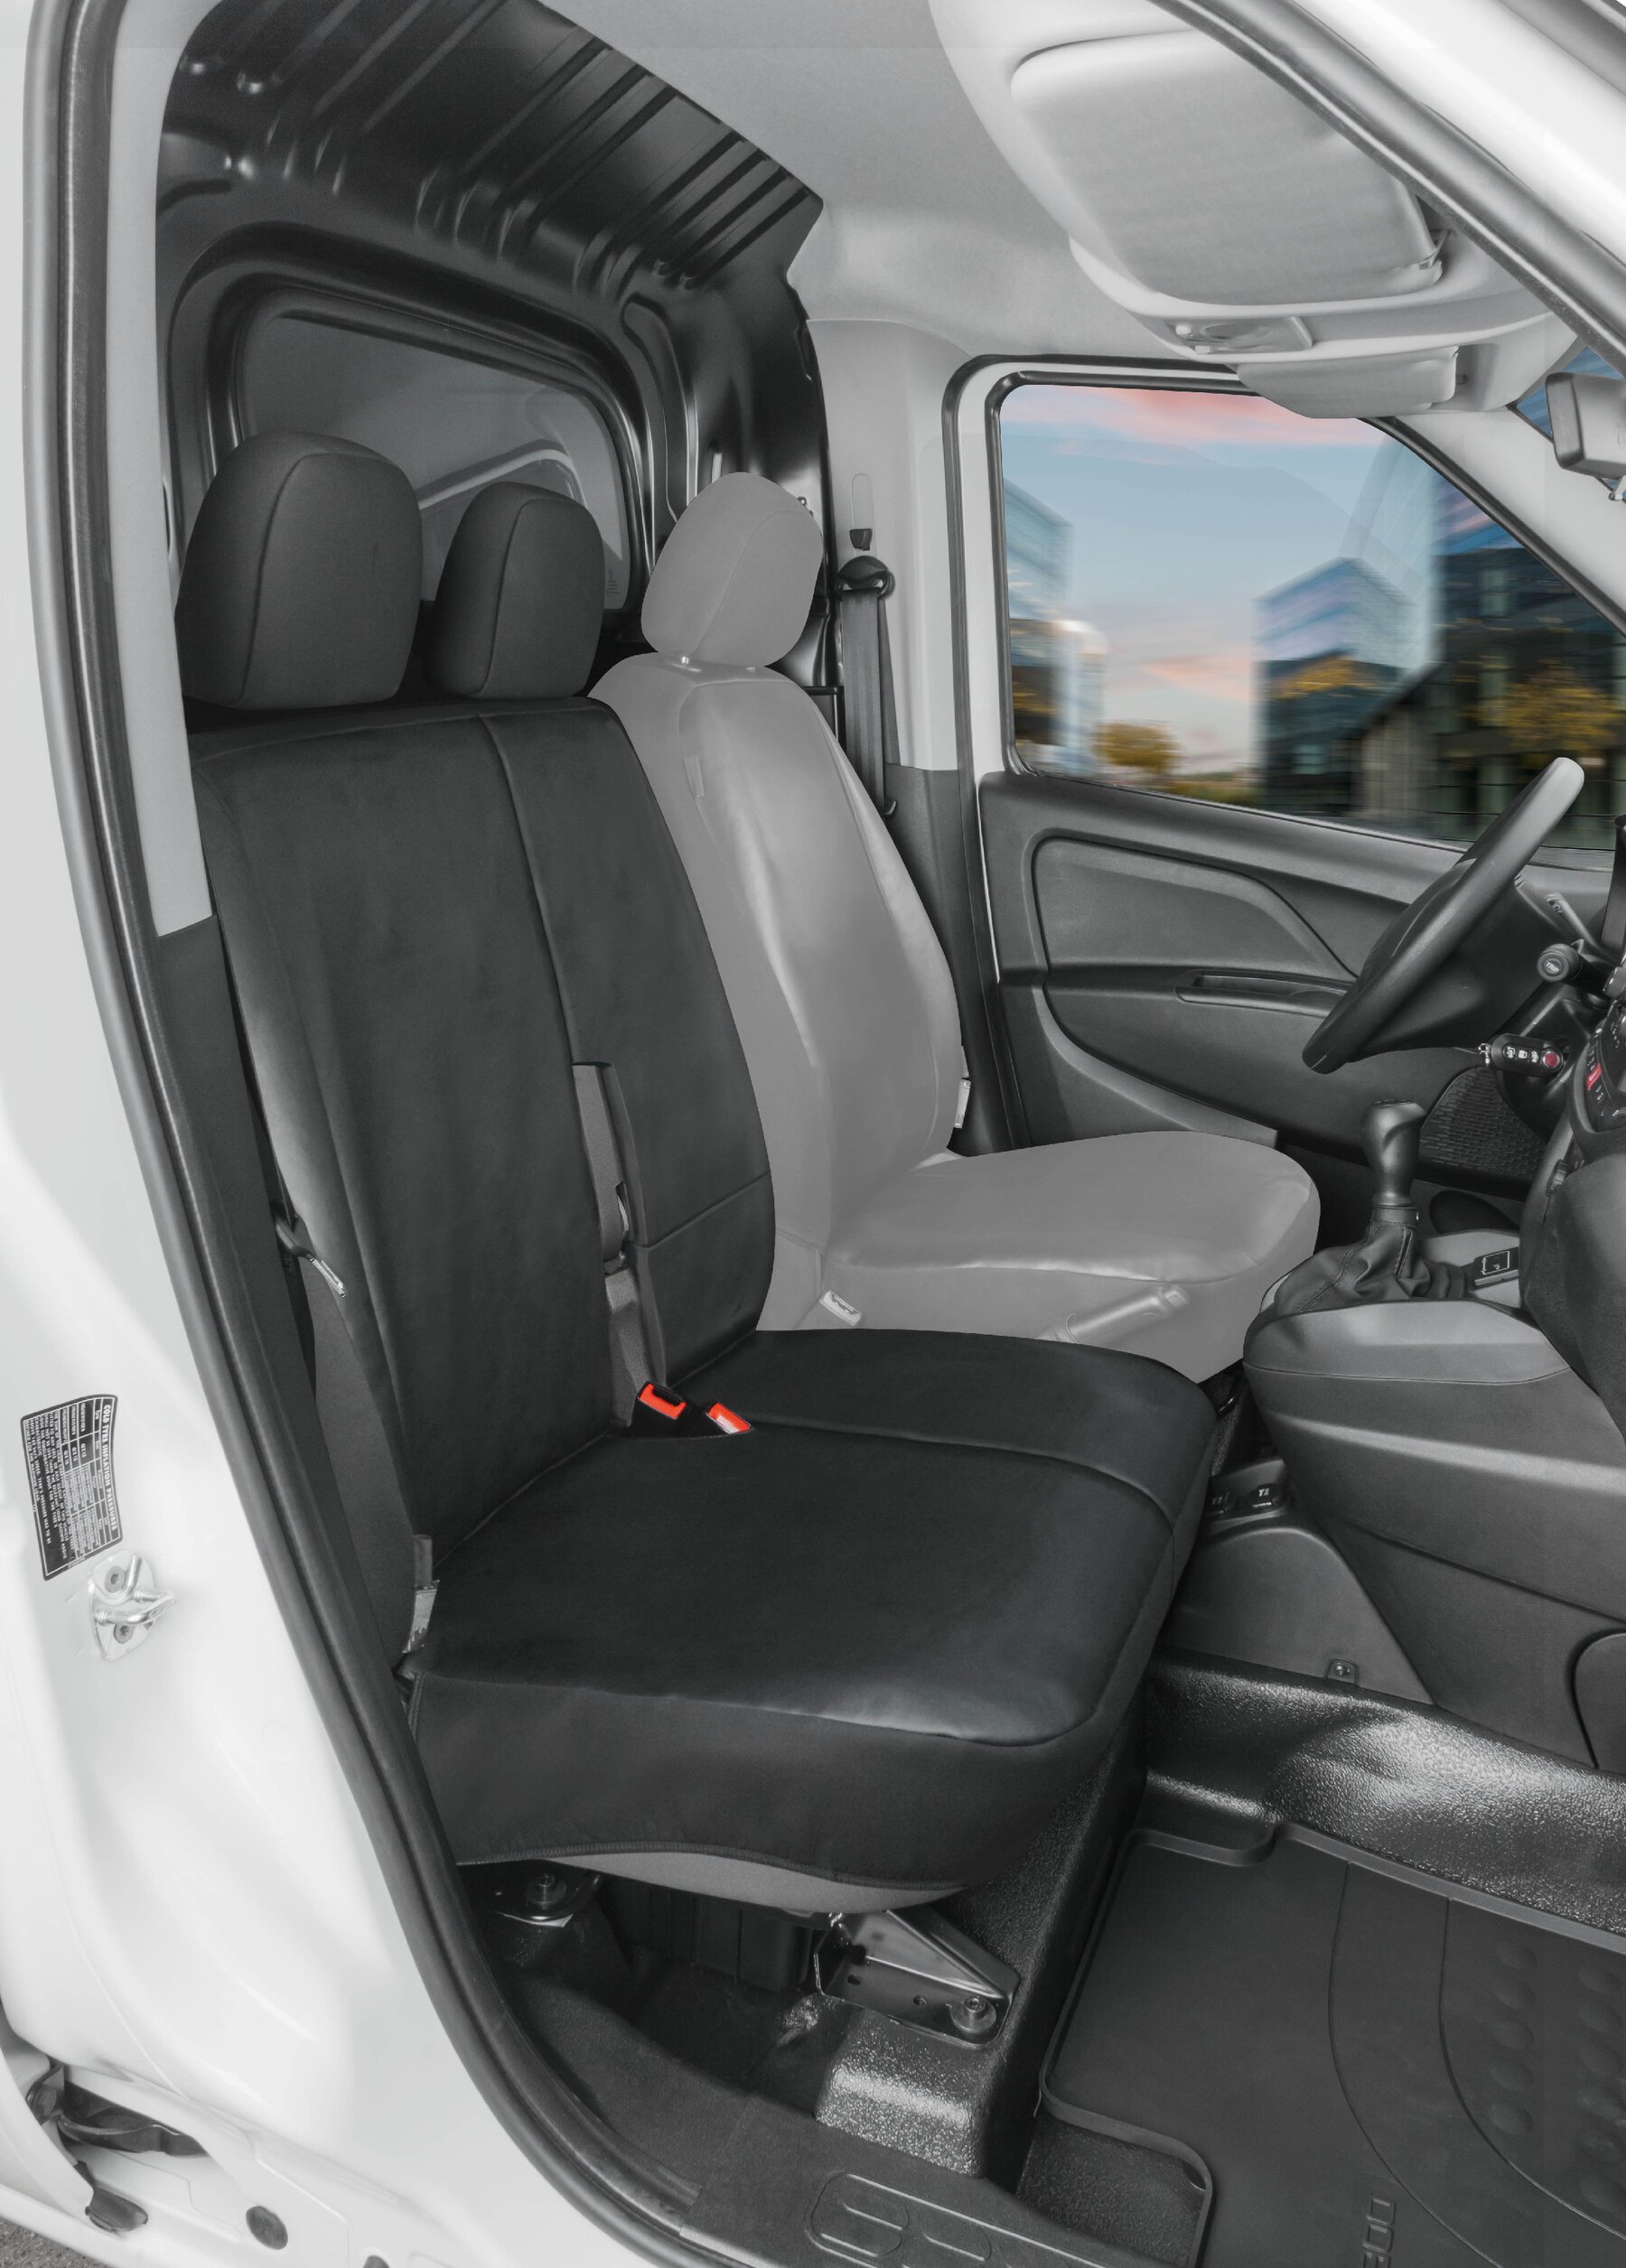 Housse de siège Transporter en simili cuir pour Ford Transit Connect, siège passager double